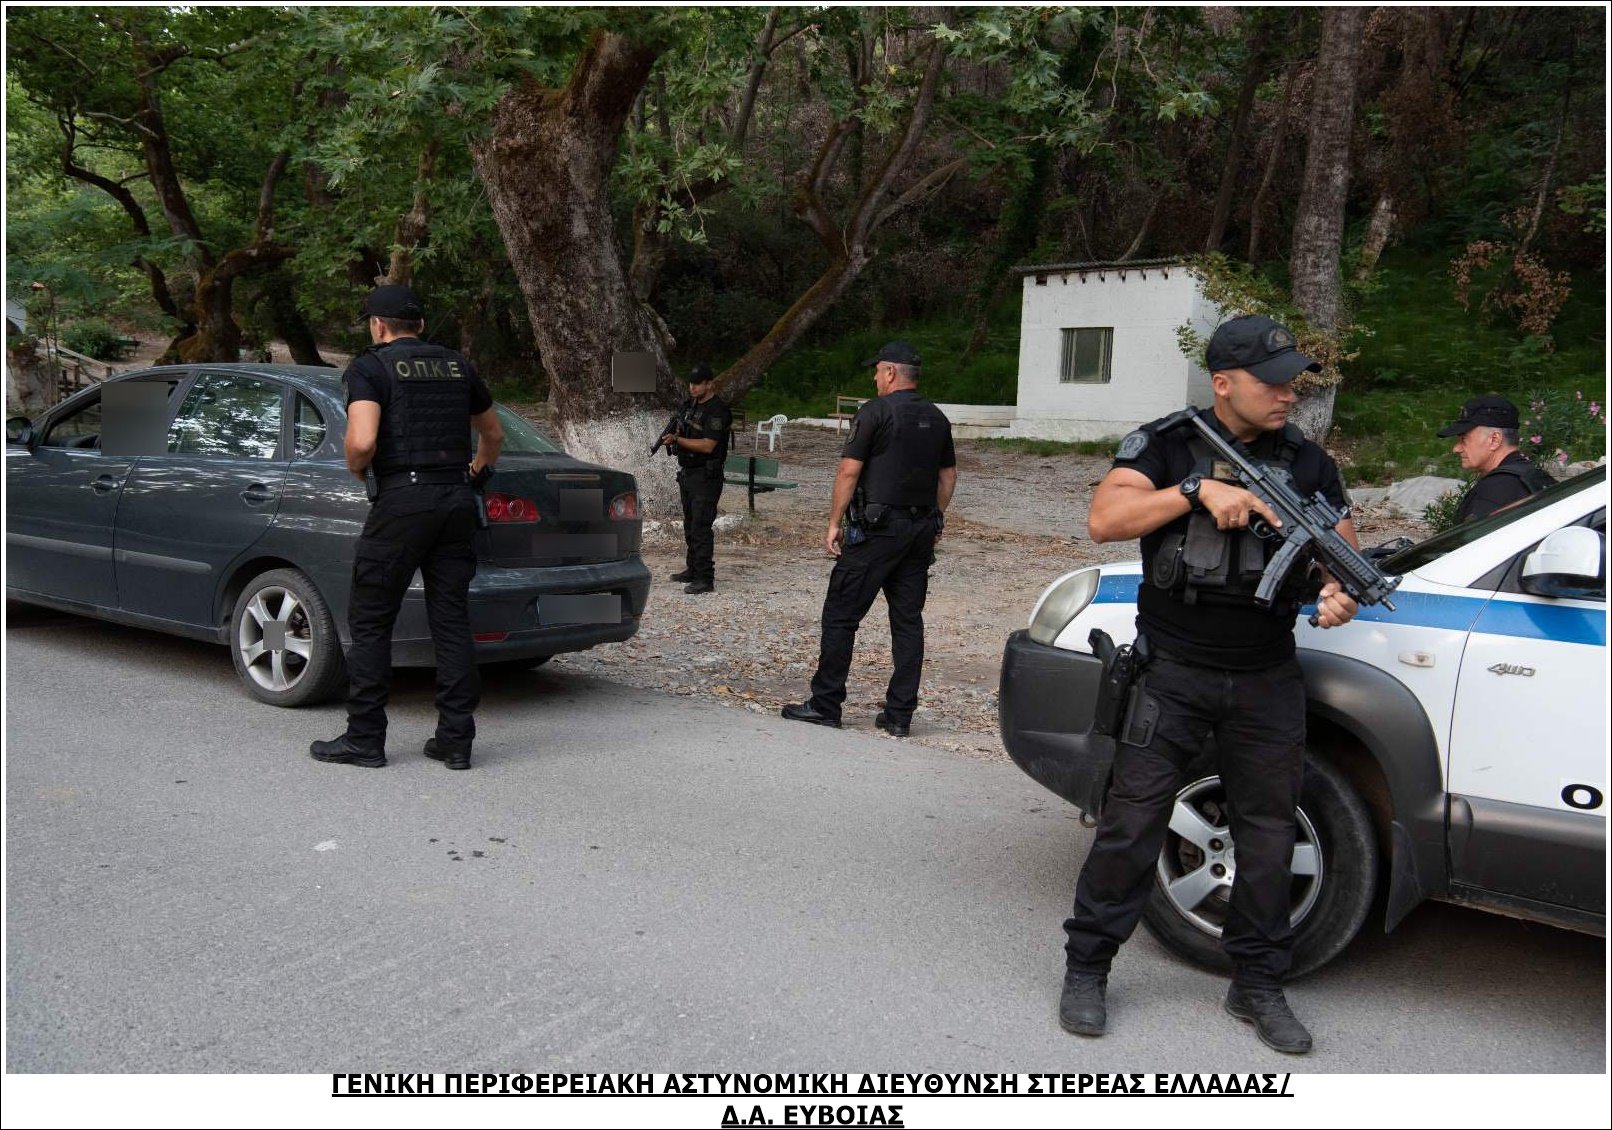 49 συλλήψεις σε εκτεταμένες αστυνομικές επιχειρήσεις στην Περιφέρεια Στερεάς Ελλάδας